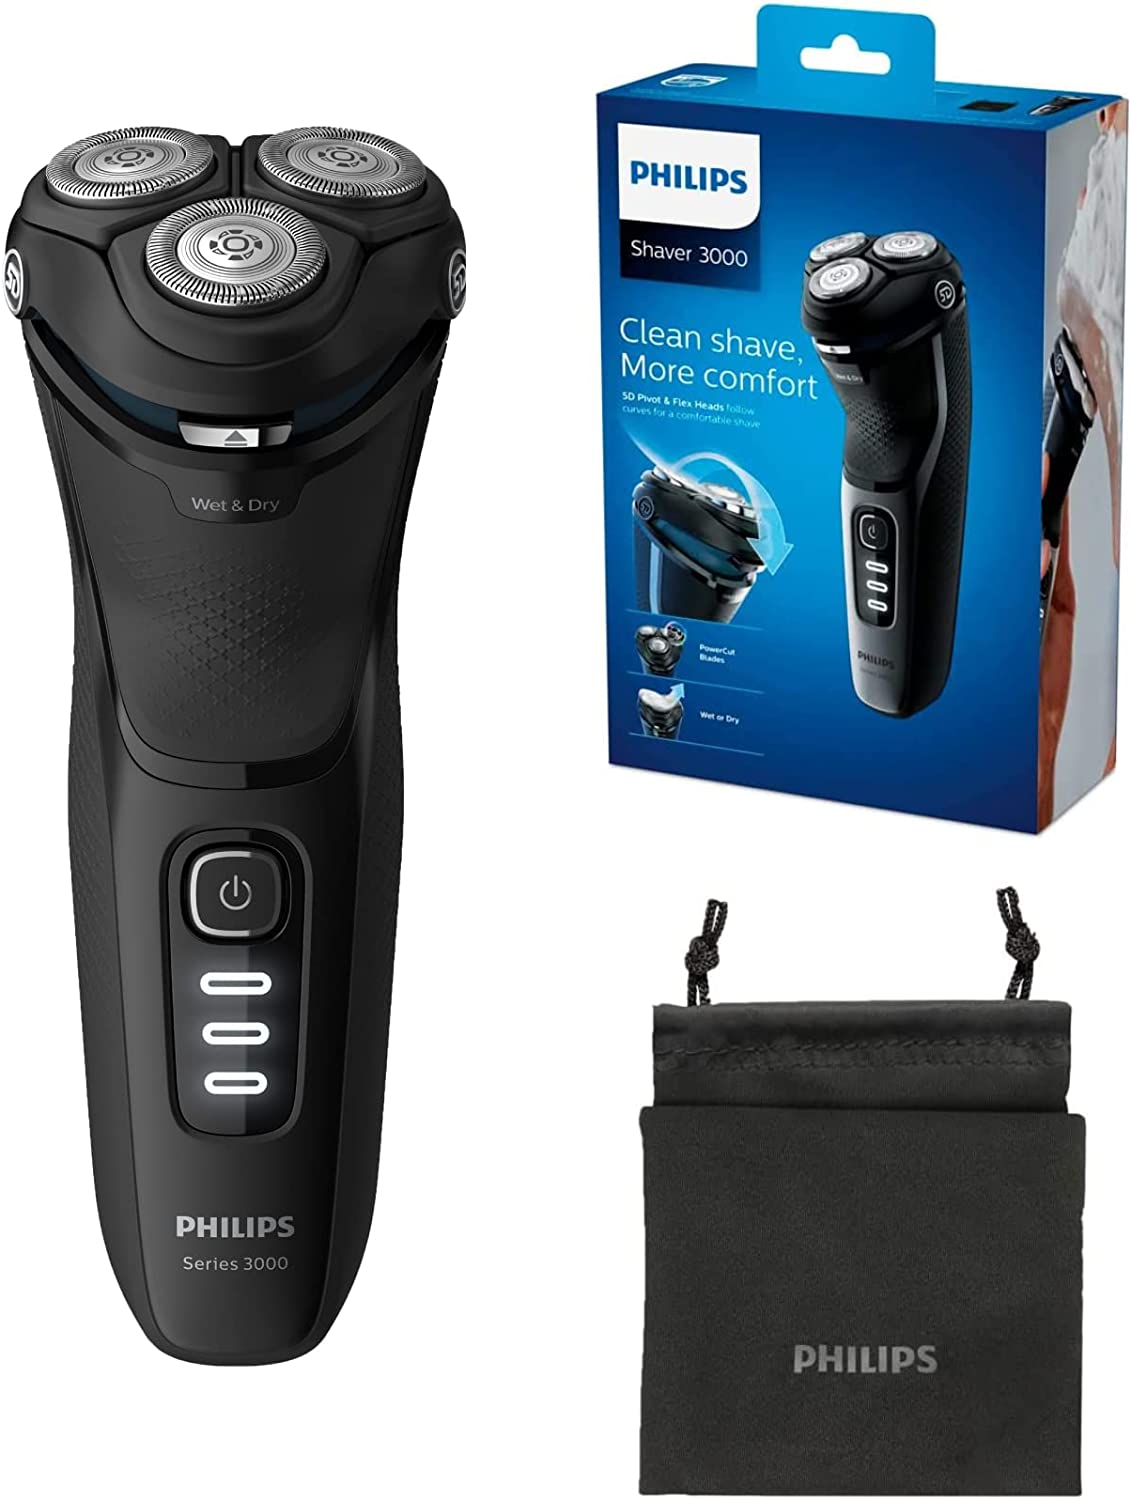 Philips Shaver Series 3000 vs Philips Shaver Series 7000 vs Philips Shaver Series 5000 vs Philips Shaver Series 9000